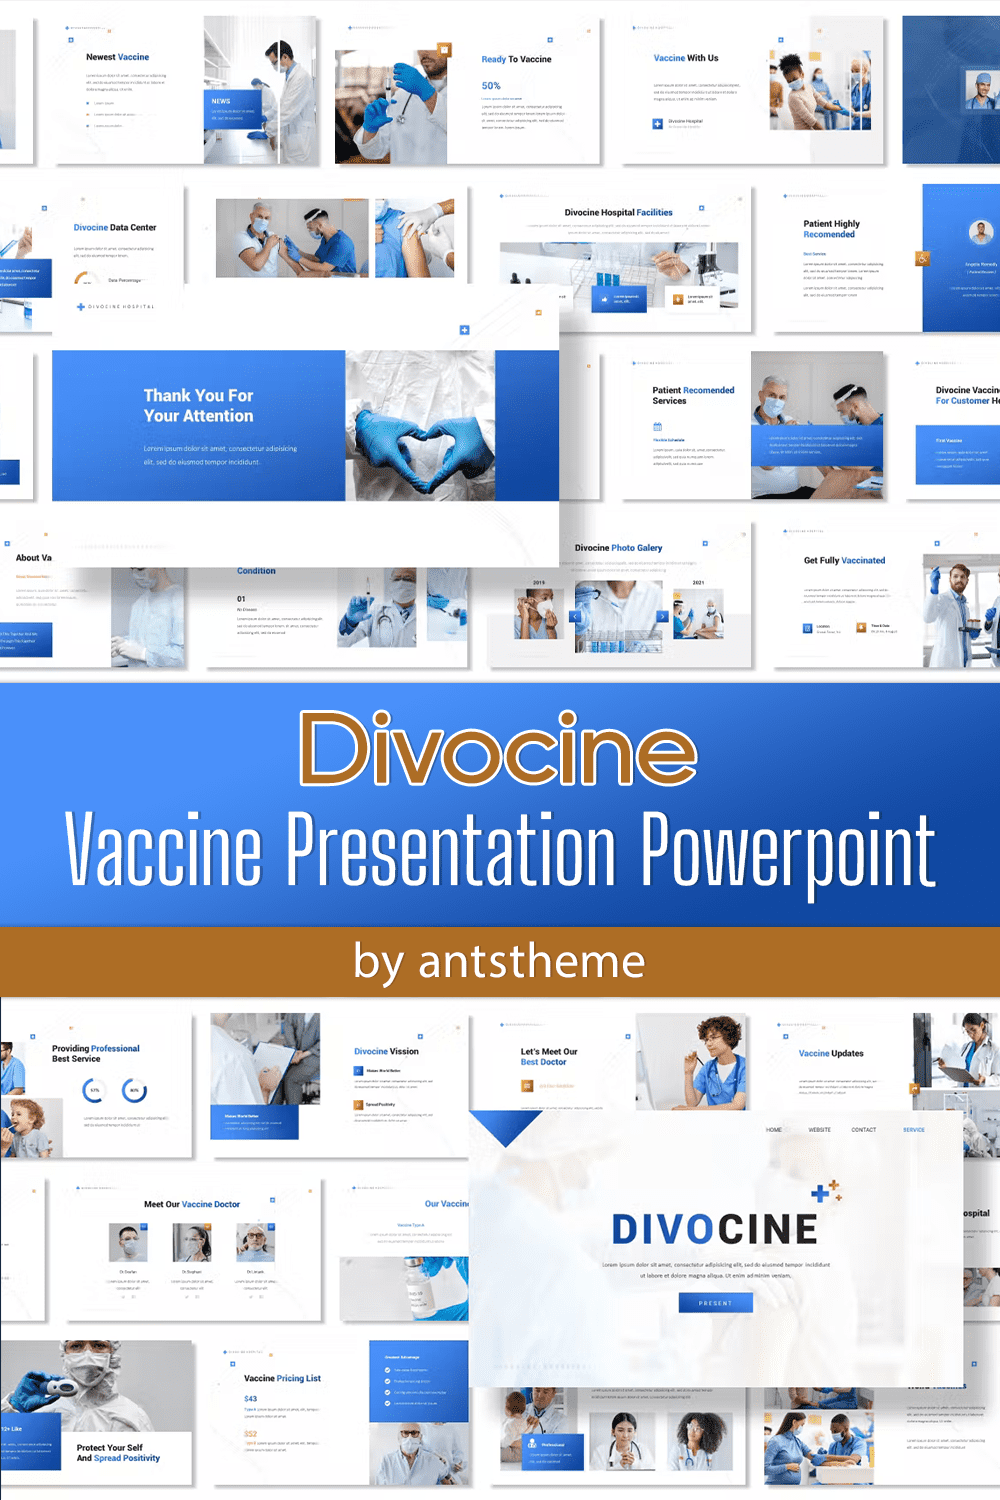 Divocine Vission of the Divocine Vaccine Presentation Powerpoint.